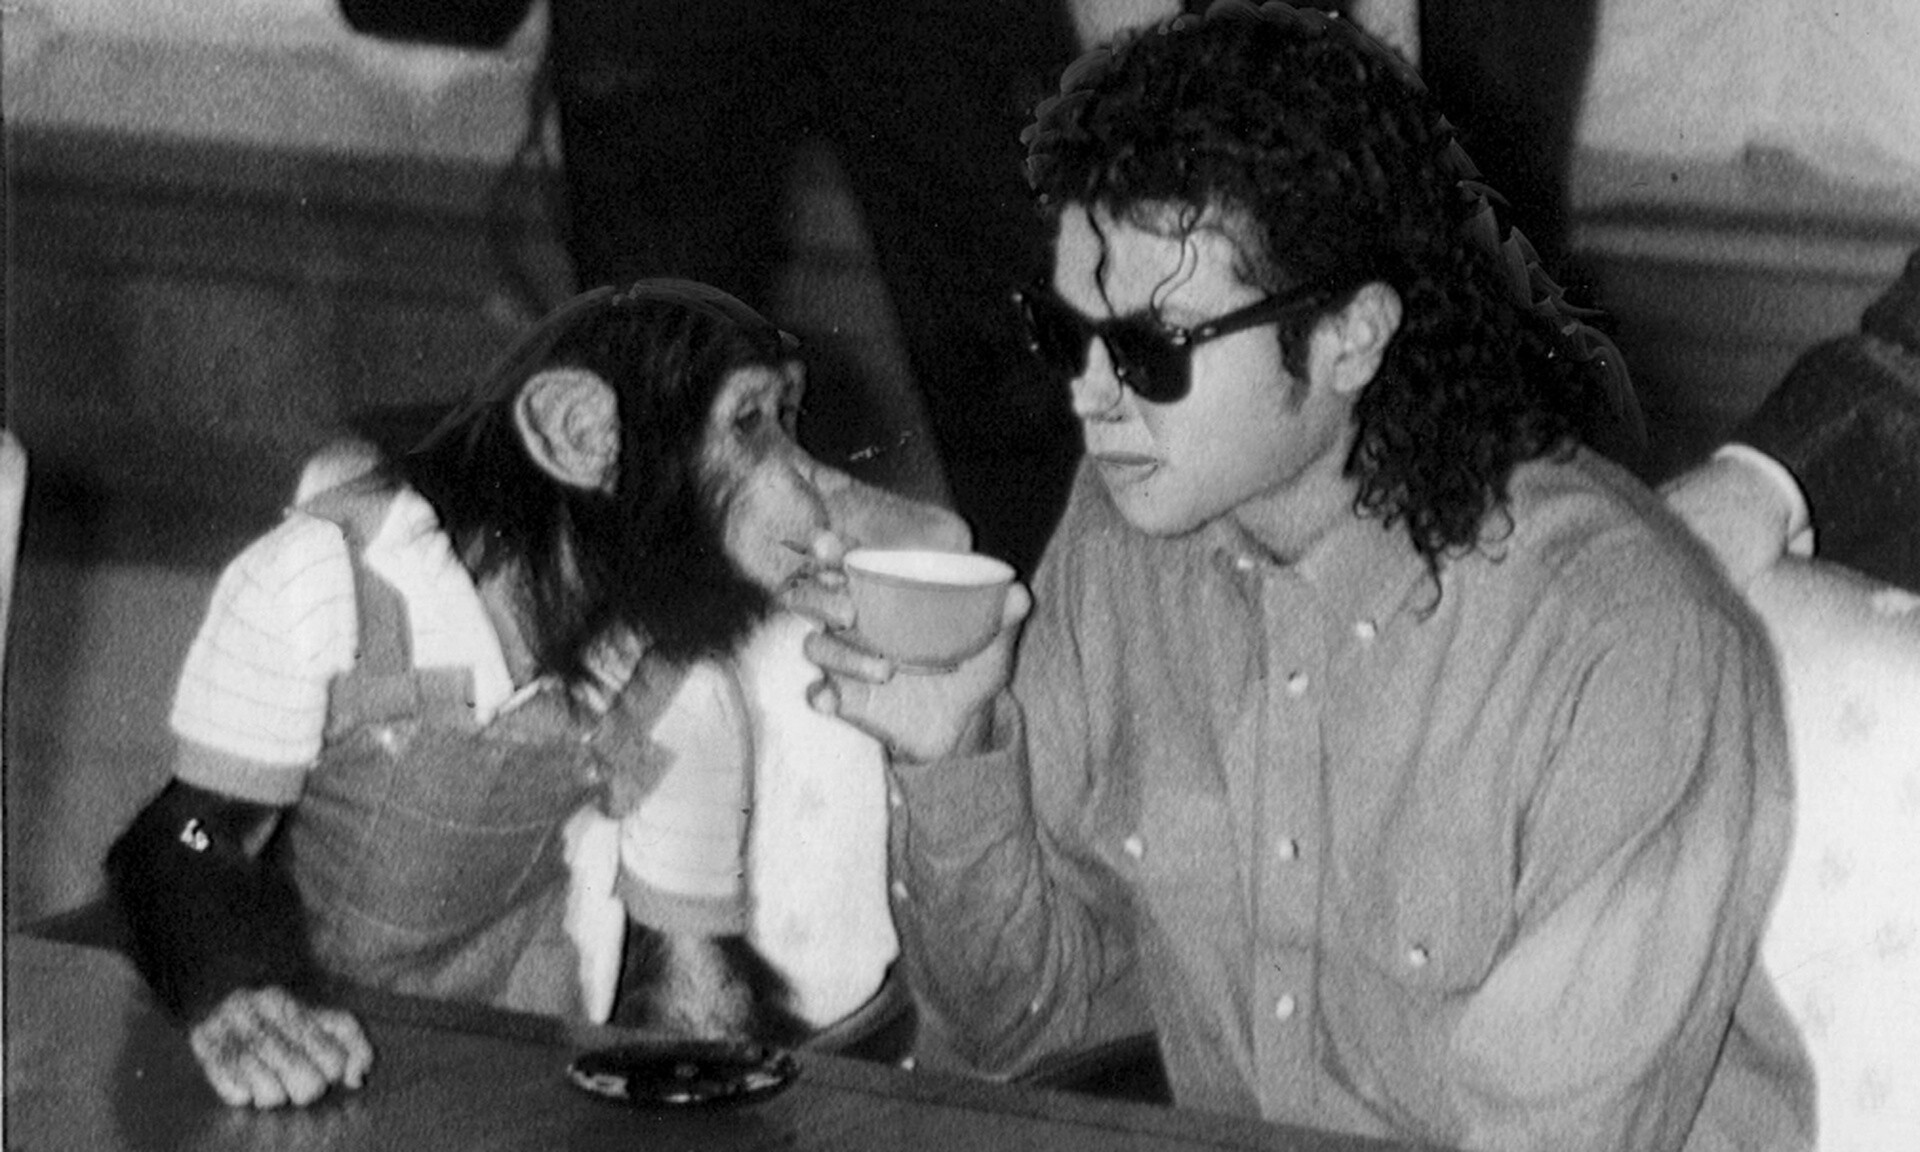 Θυμάστε τον Bubbles; Ο χιμπατζής του Μάικλ Τζάκσον ζει και βασιλεύει - Μόλις έγινε 40 ετών